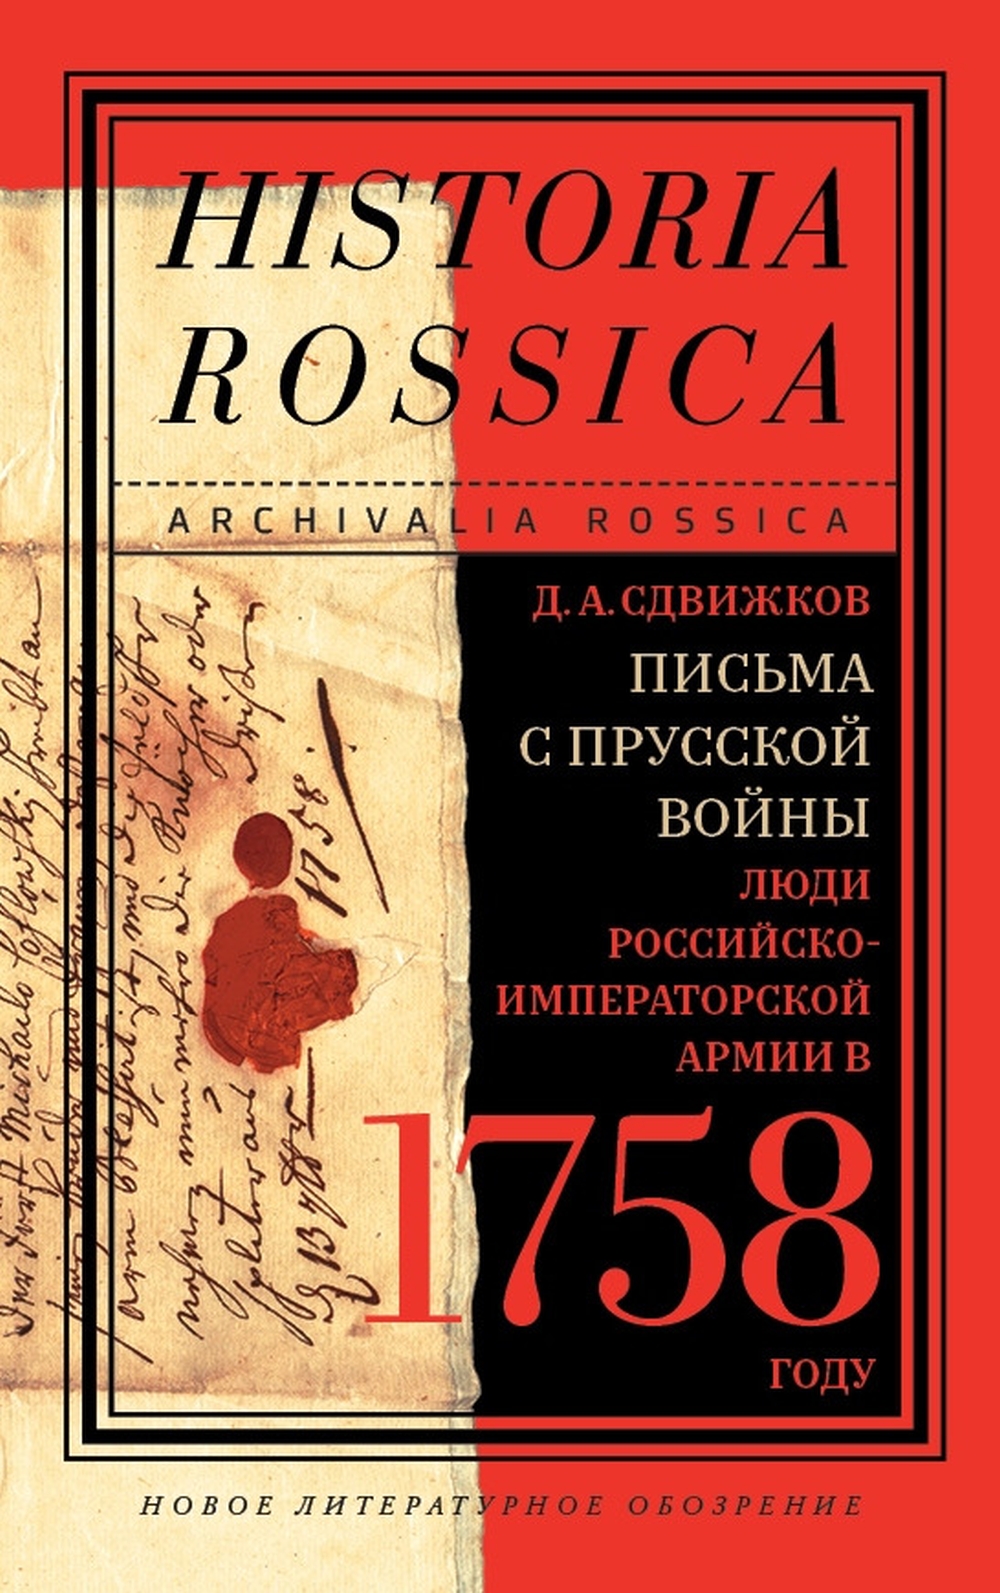 "Письма с Прусской войны. Люди Российско-императорской армии в 1758 году" - подарок историкам.